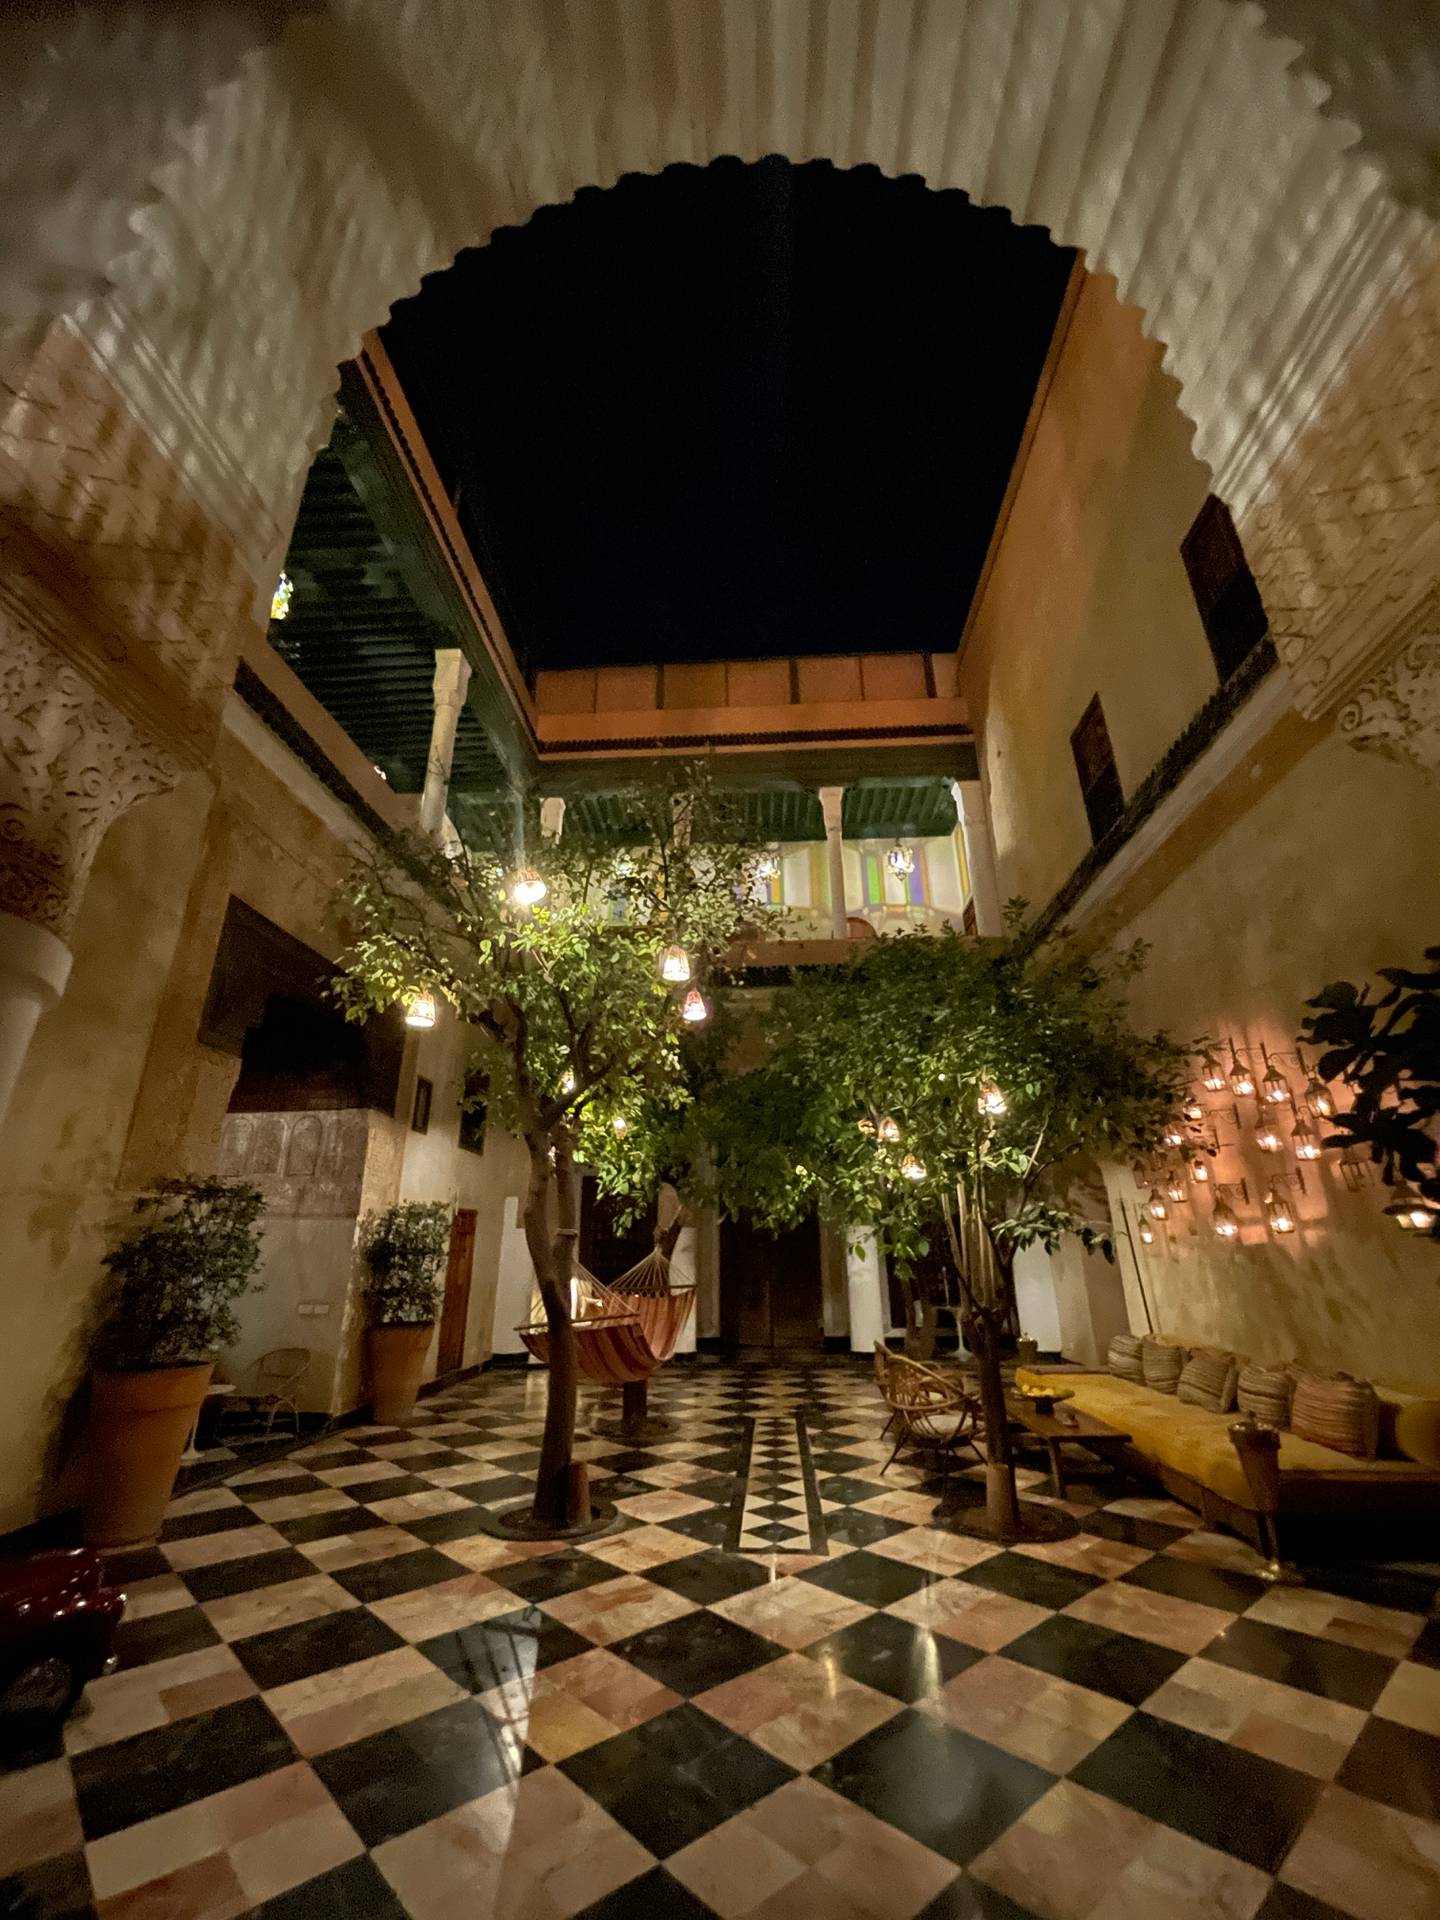 Detalle interior de El Fenn Hotel, sitio donde estaban alojados los ticos en el pleno centro del casco viejo de Marrakesh. Fotografía: Cortesía